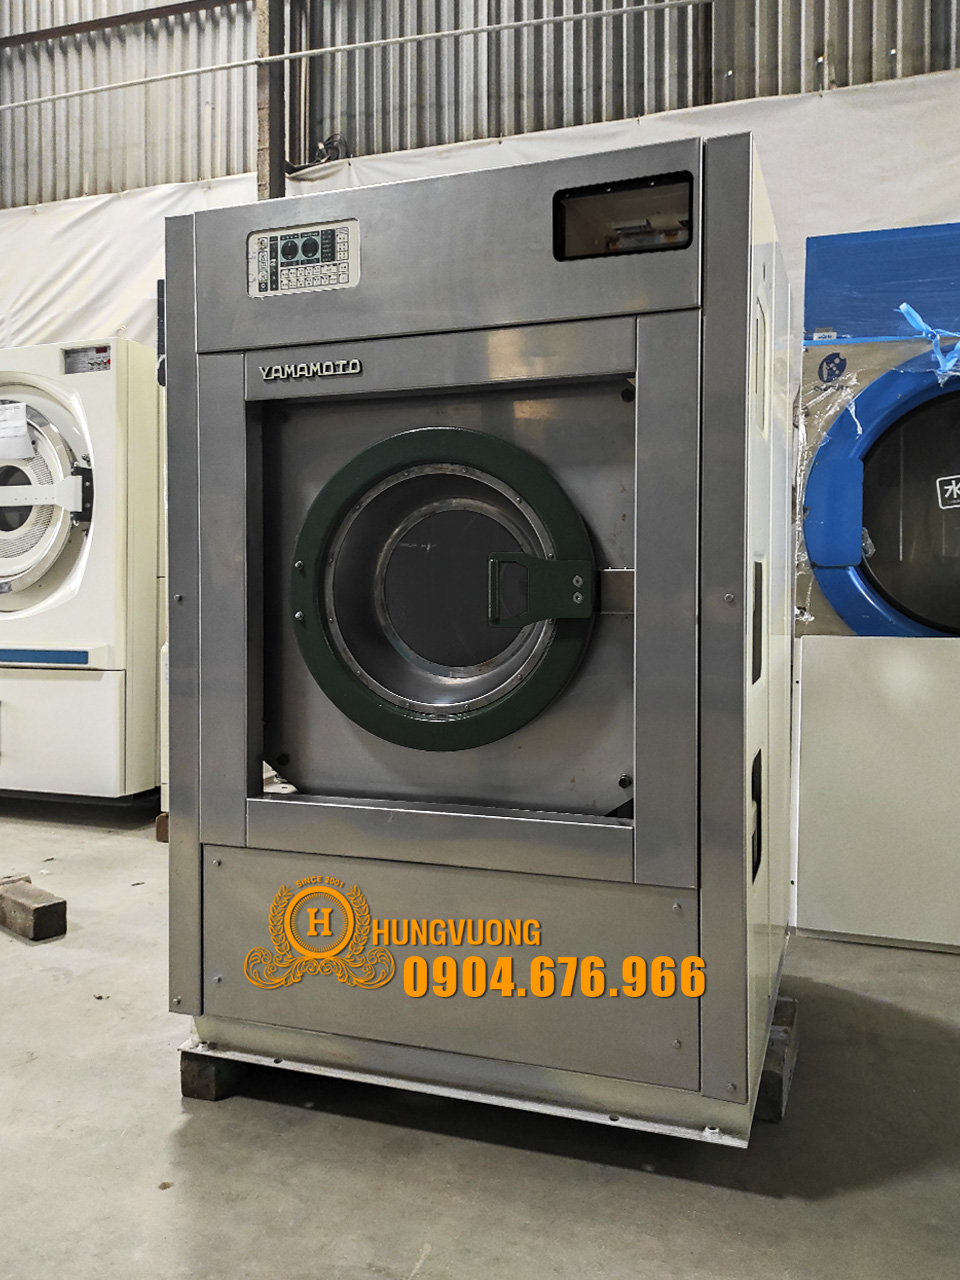 Mặt nghiêng máy giặt công nghiệp YAMAMOTO 22kg, chân chống rung, biến tần, Nhật Bản